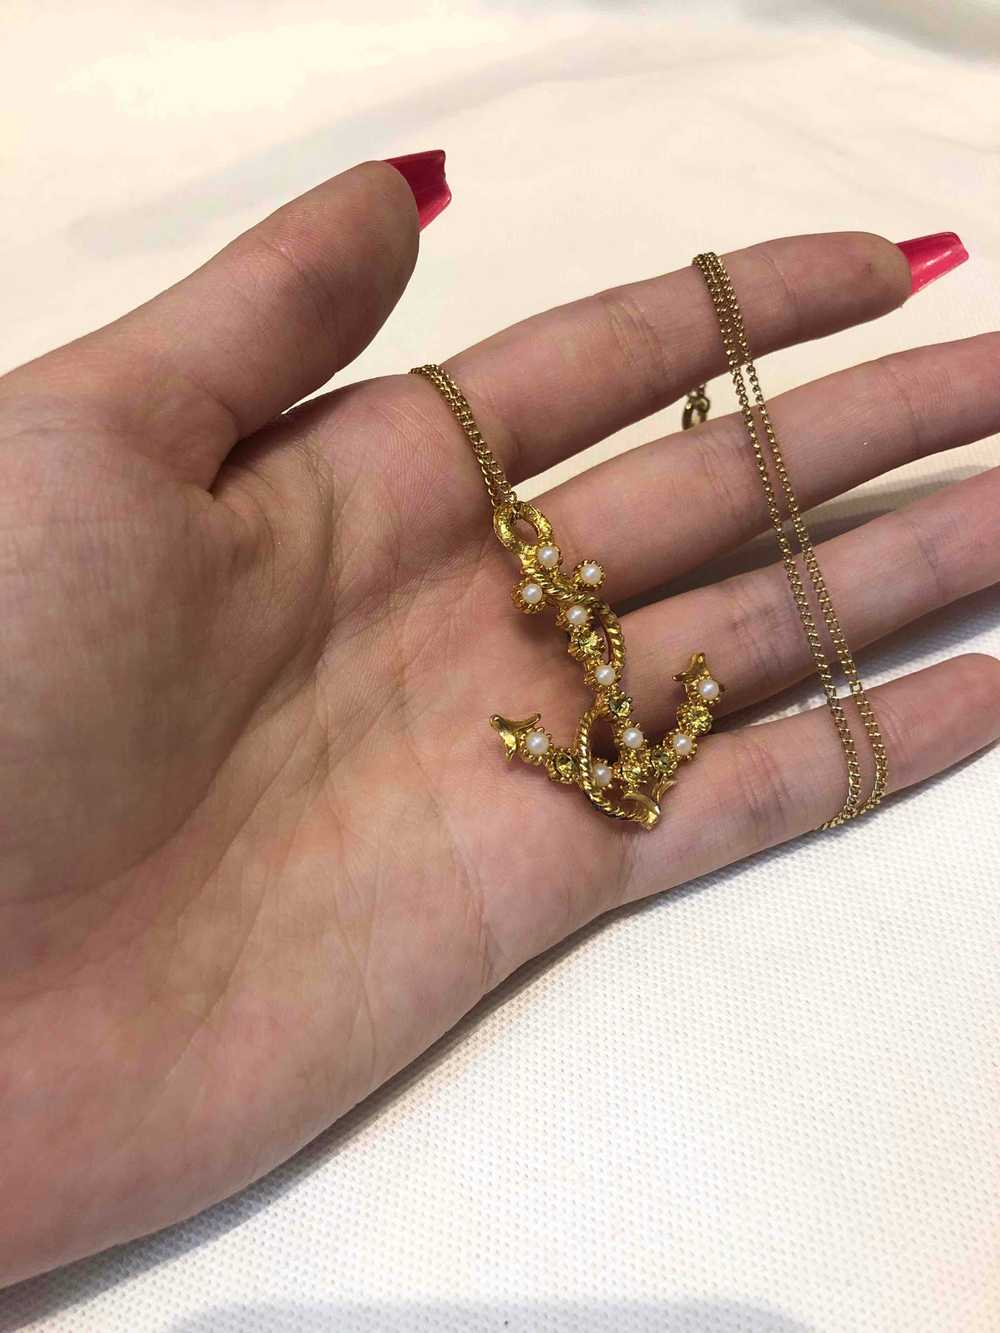 Golden metal necklace - Golden metal necklace wit… - image 3